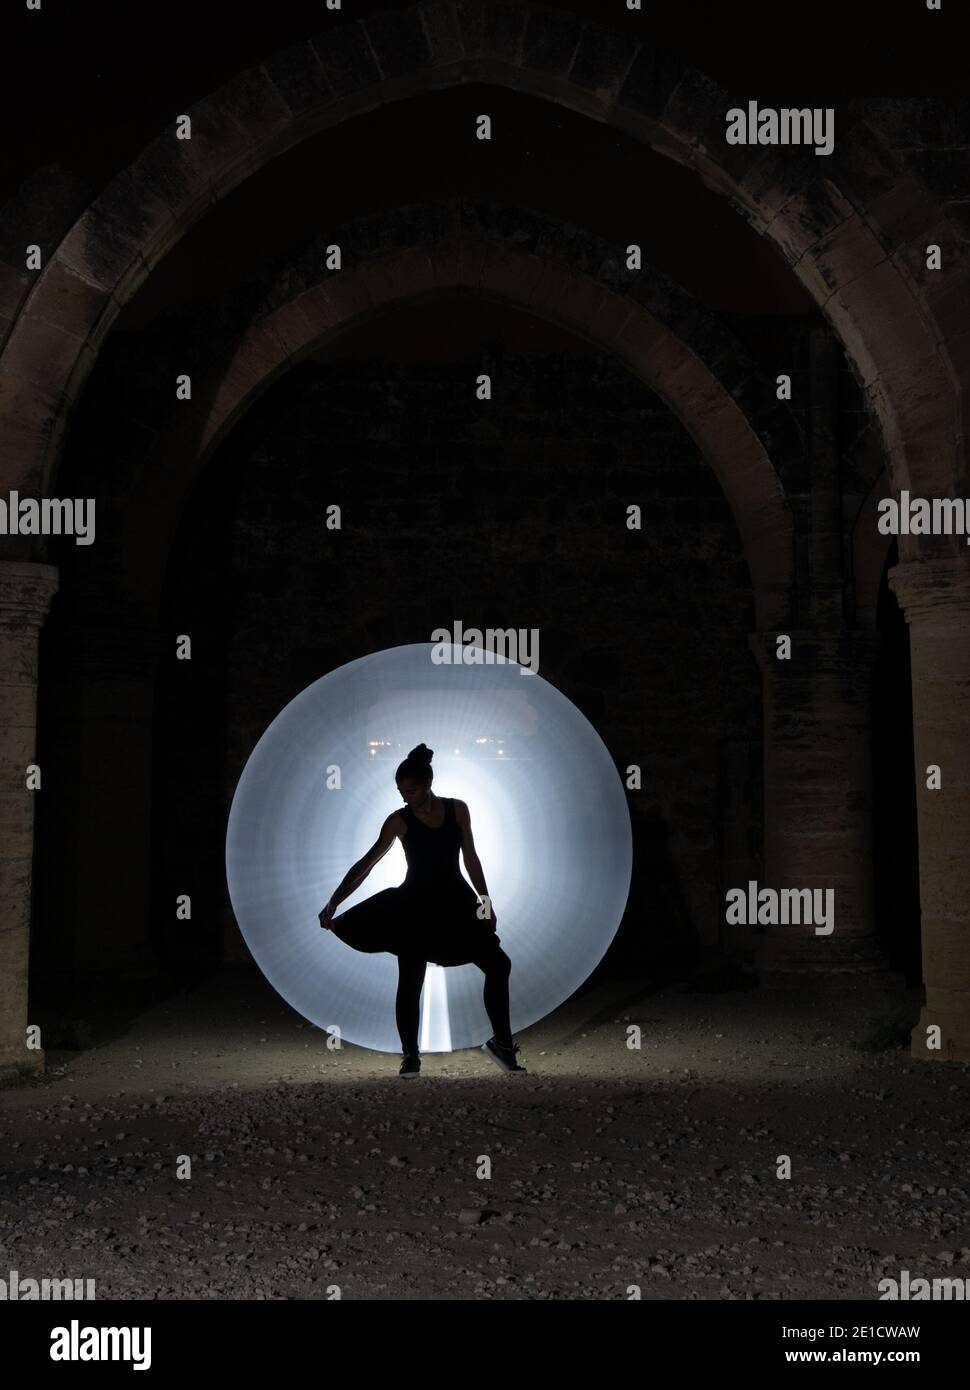 Giovane donna che danzava sotto una vecchia colonna lapidata con un cerchio di luce di pittura dietro. Fotografia di pittura leggera Foto Stock